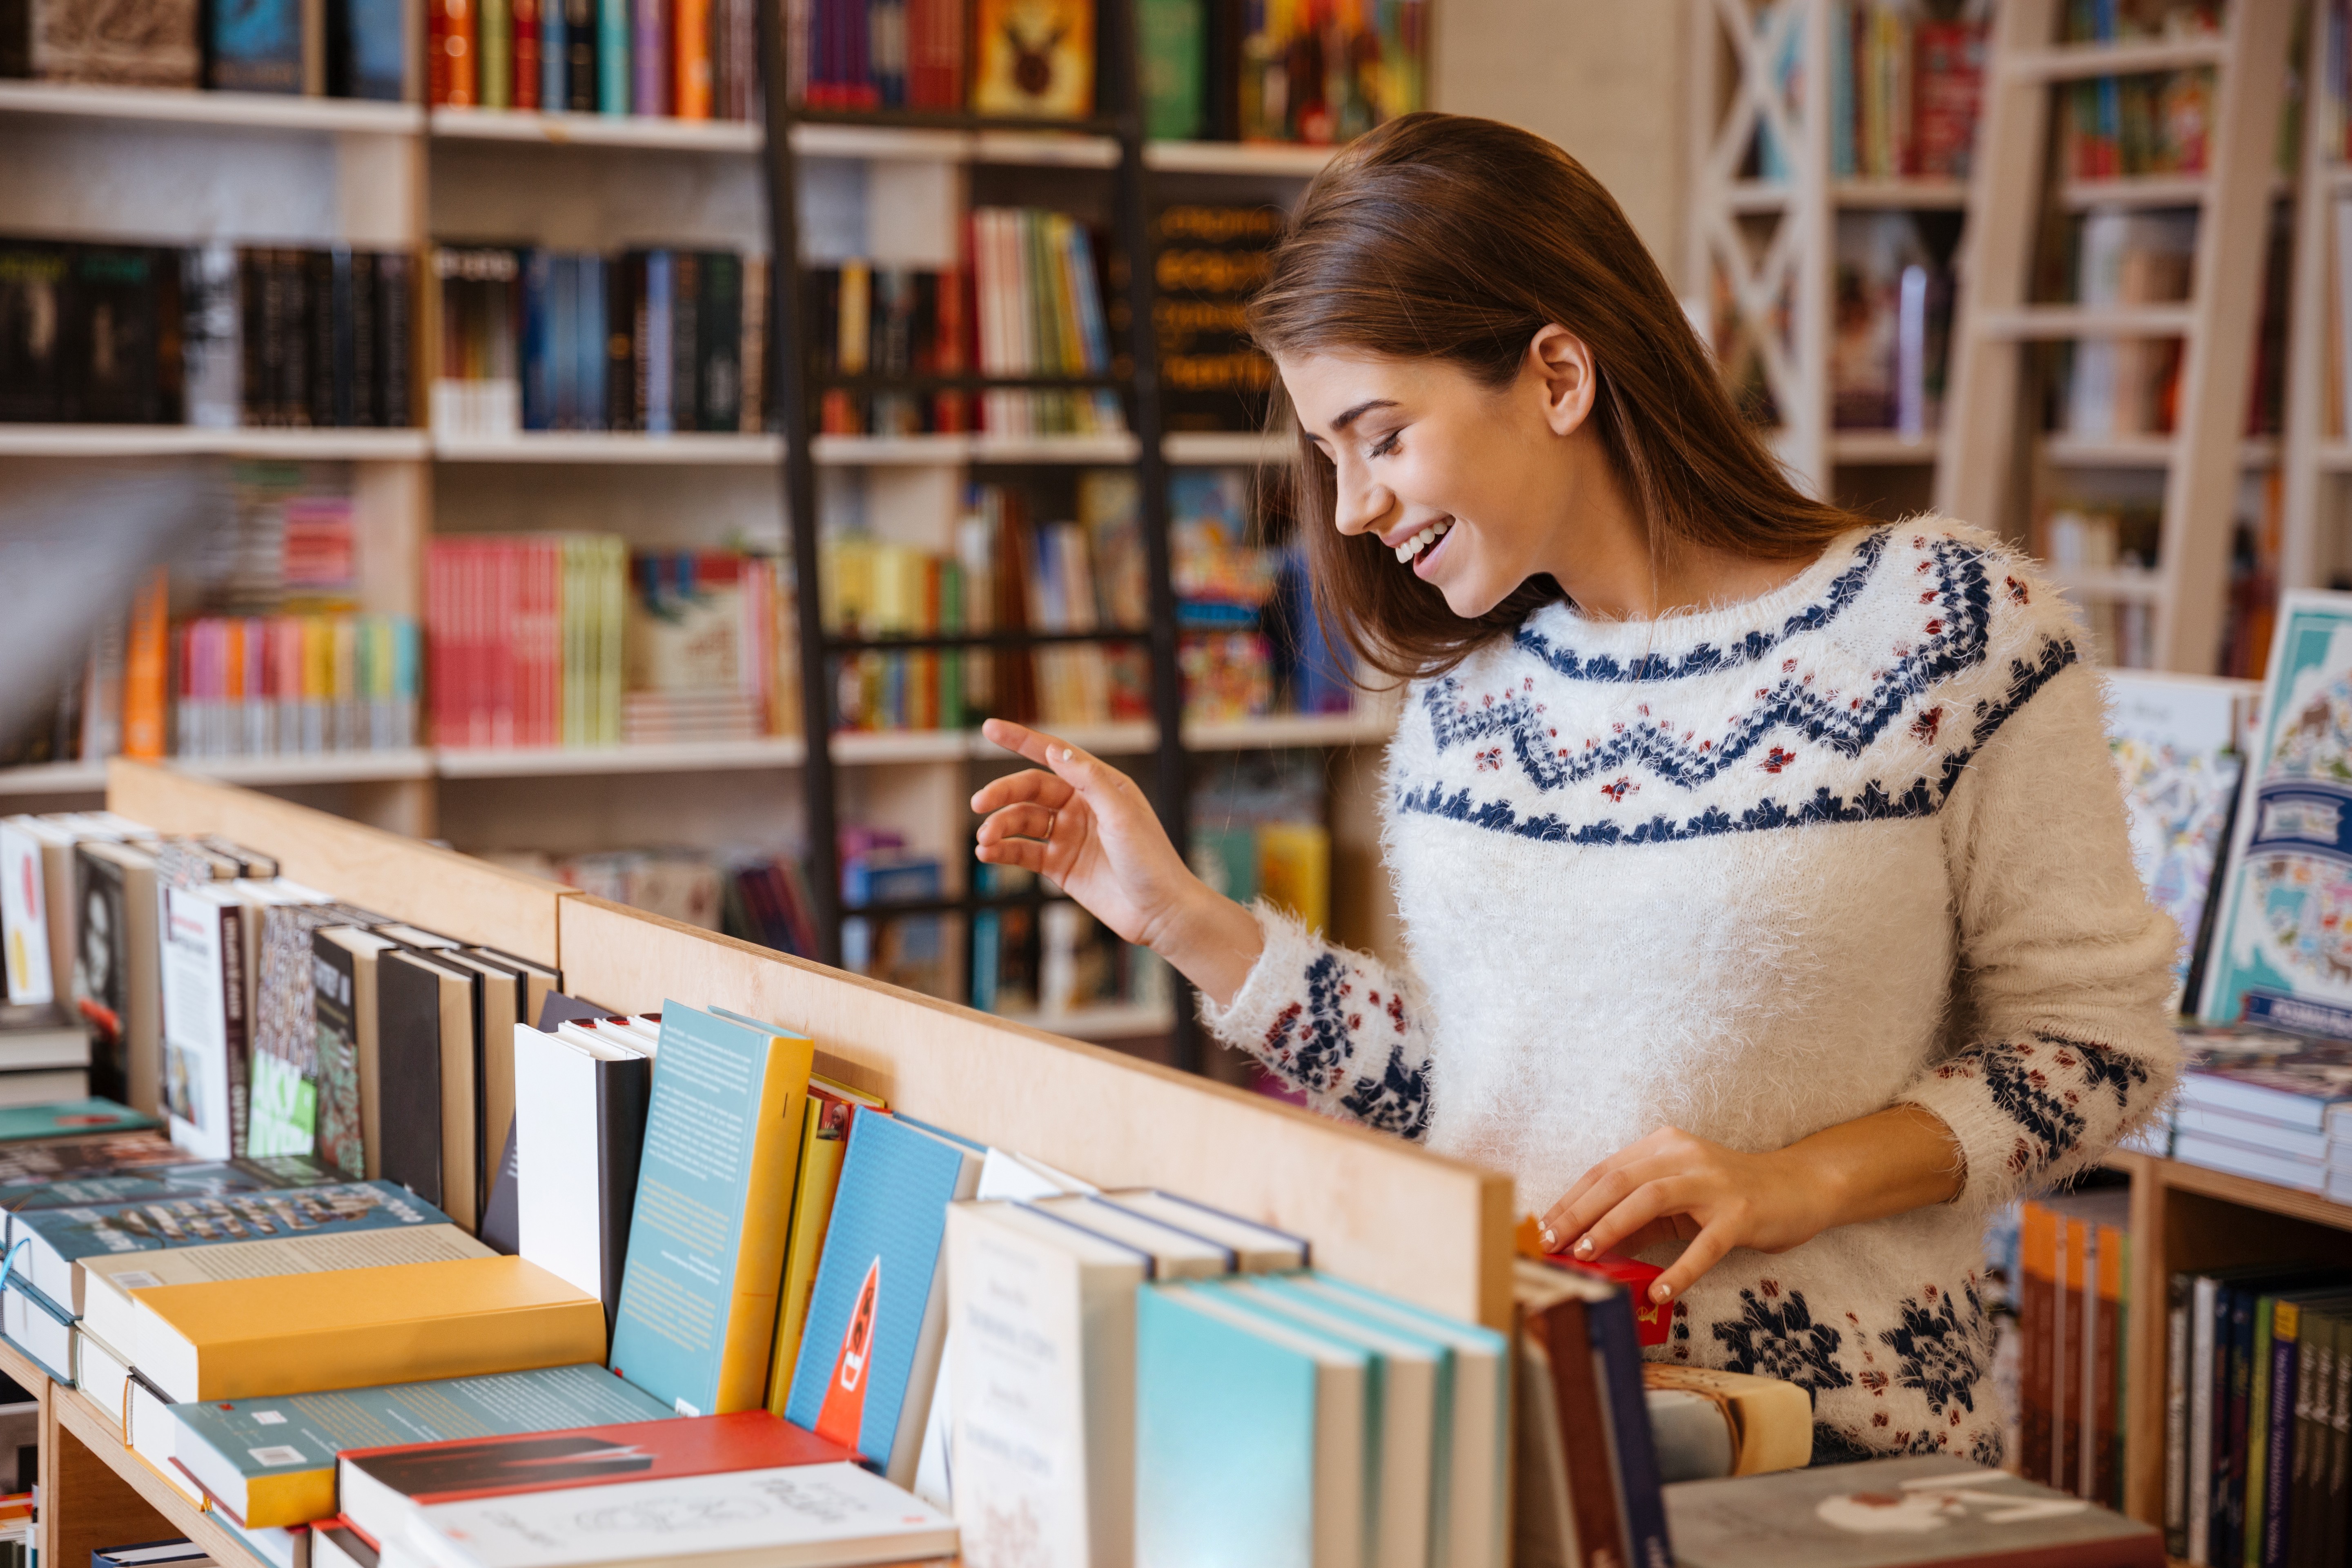 Шестьюстами книгами. Человек выбирает книги в магазине. Девочка в книжном магазине. Книжный магазин картинки. Покупатели в книжном магазине.